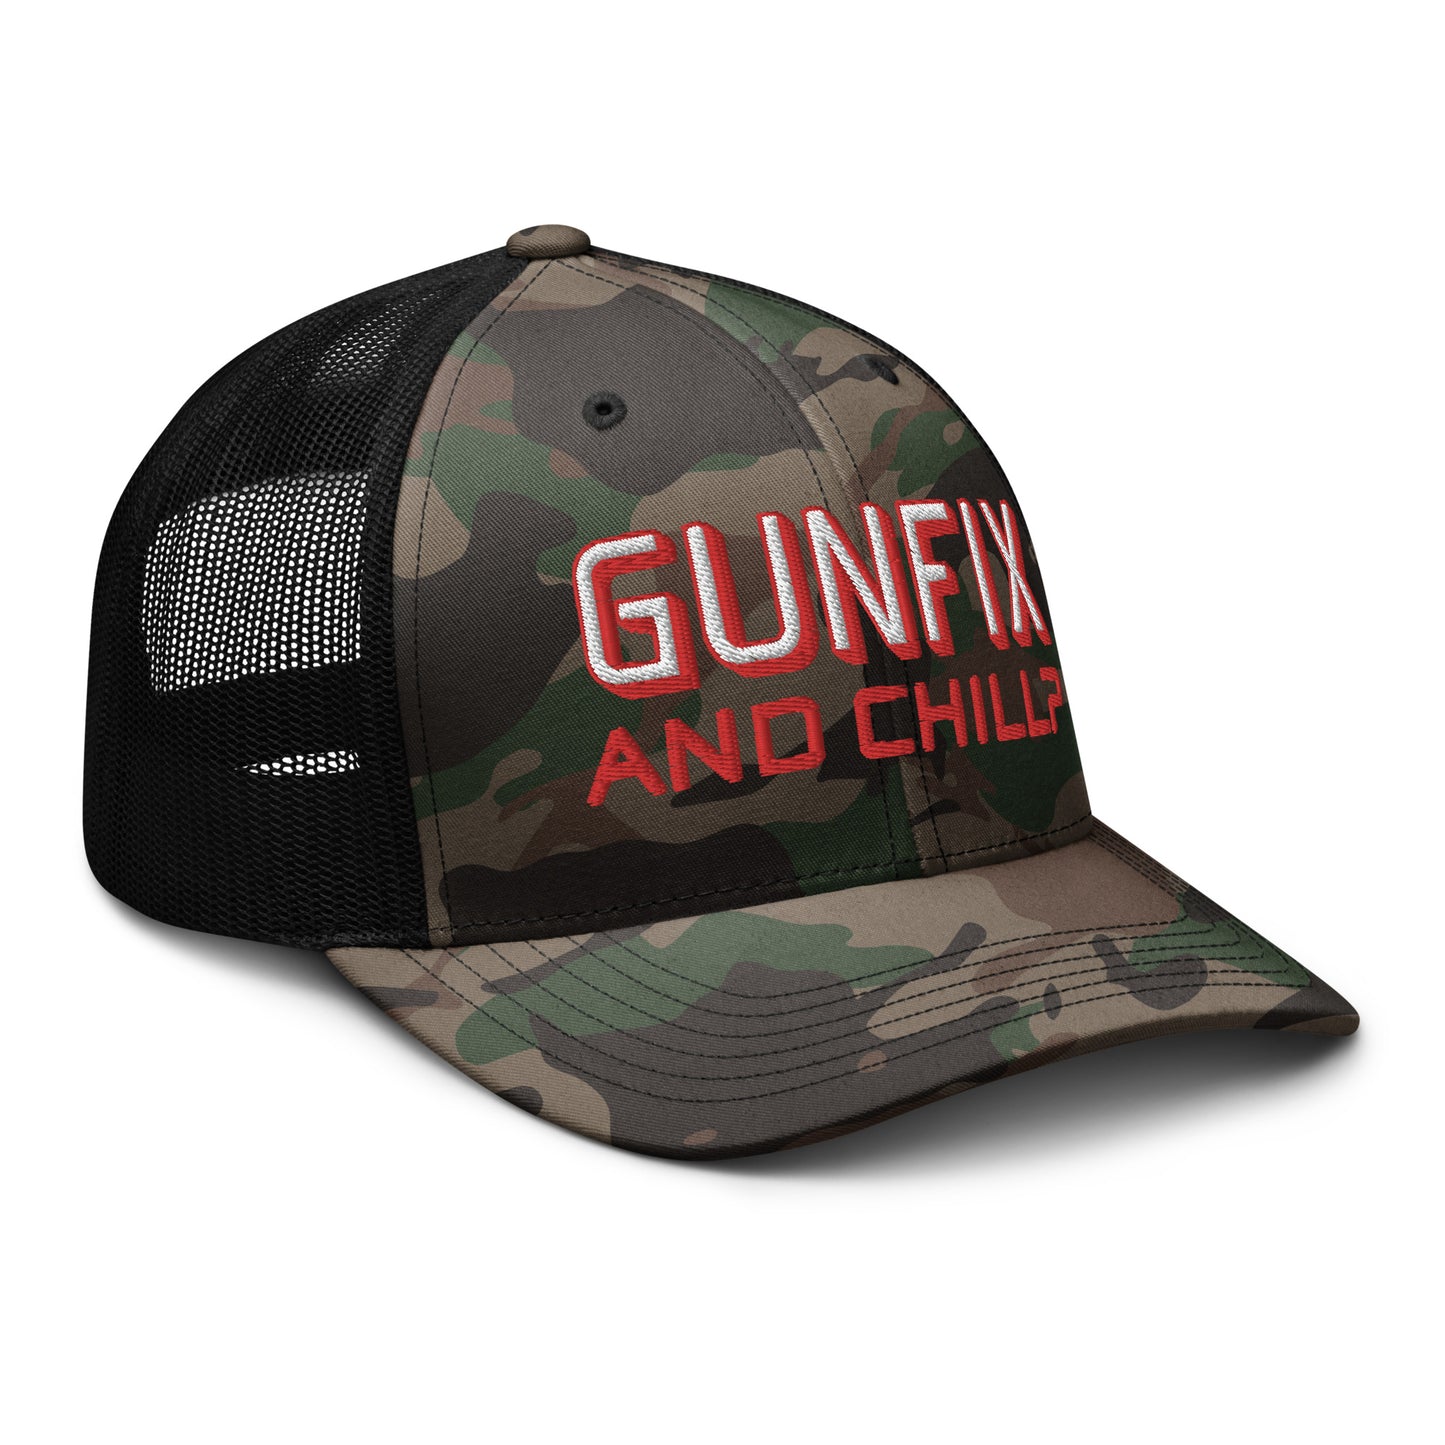 GUNFIX & Chill? Camouflage trucker hat